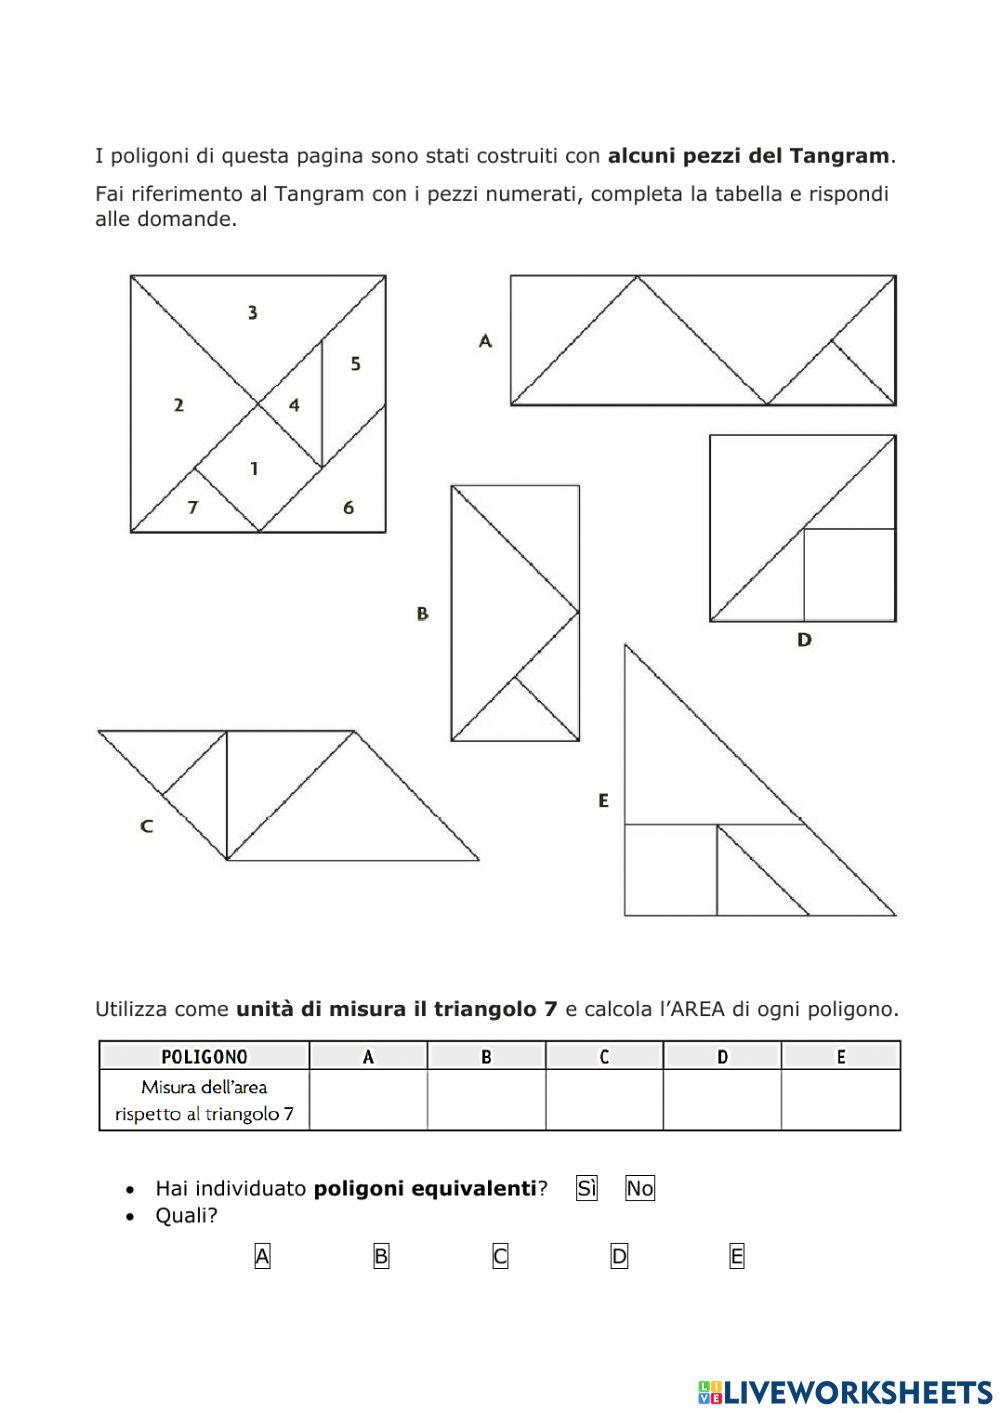 Misurare l'AREA del tangram